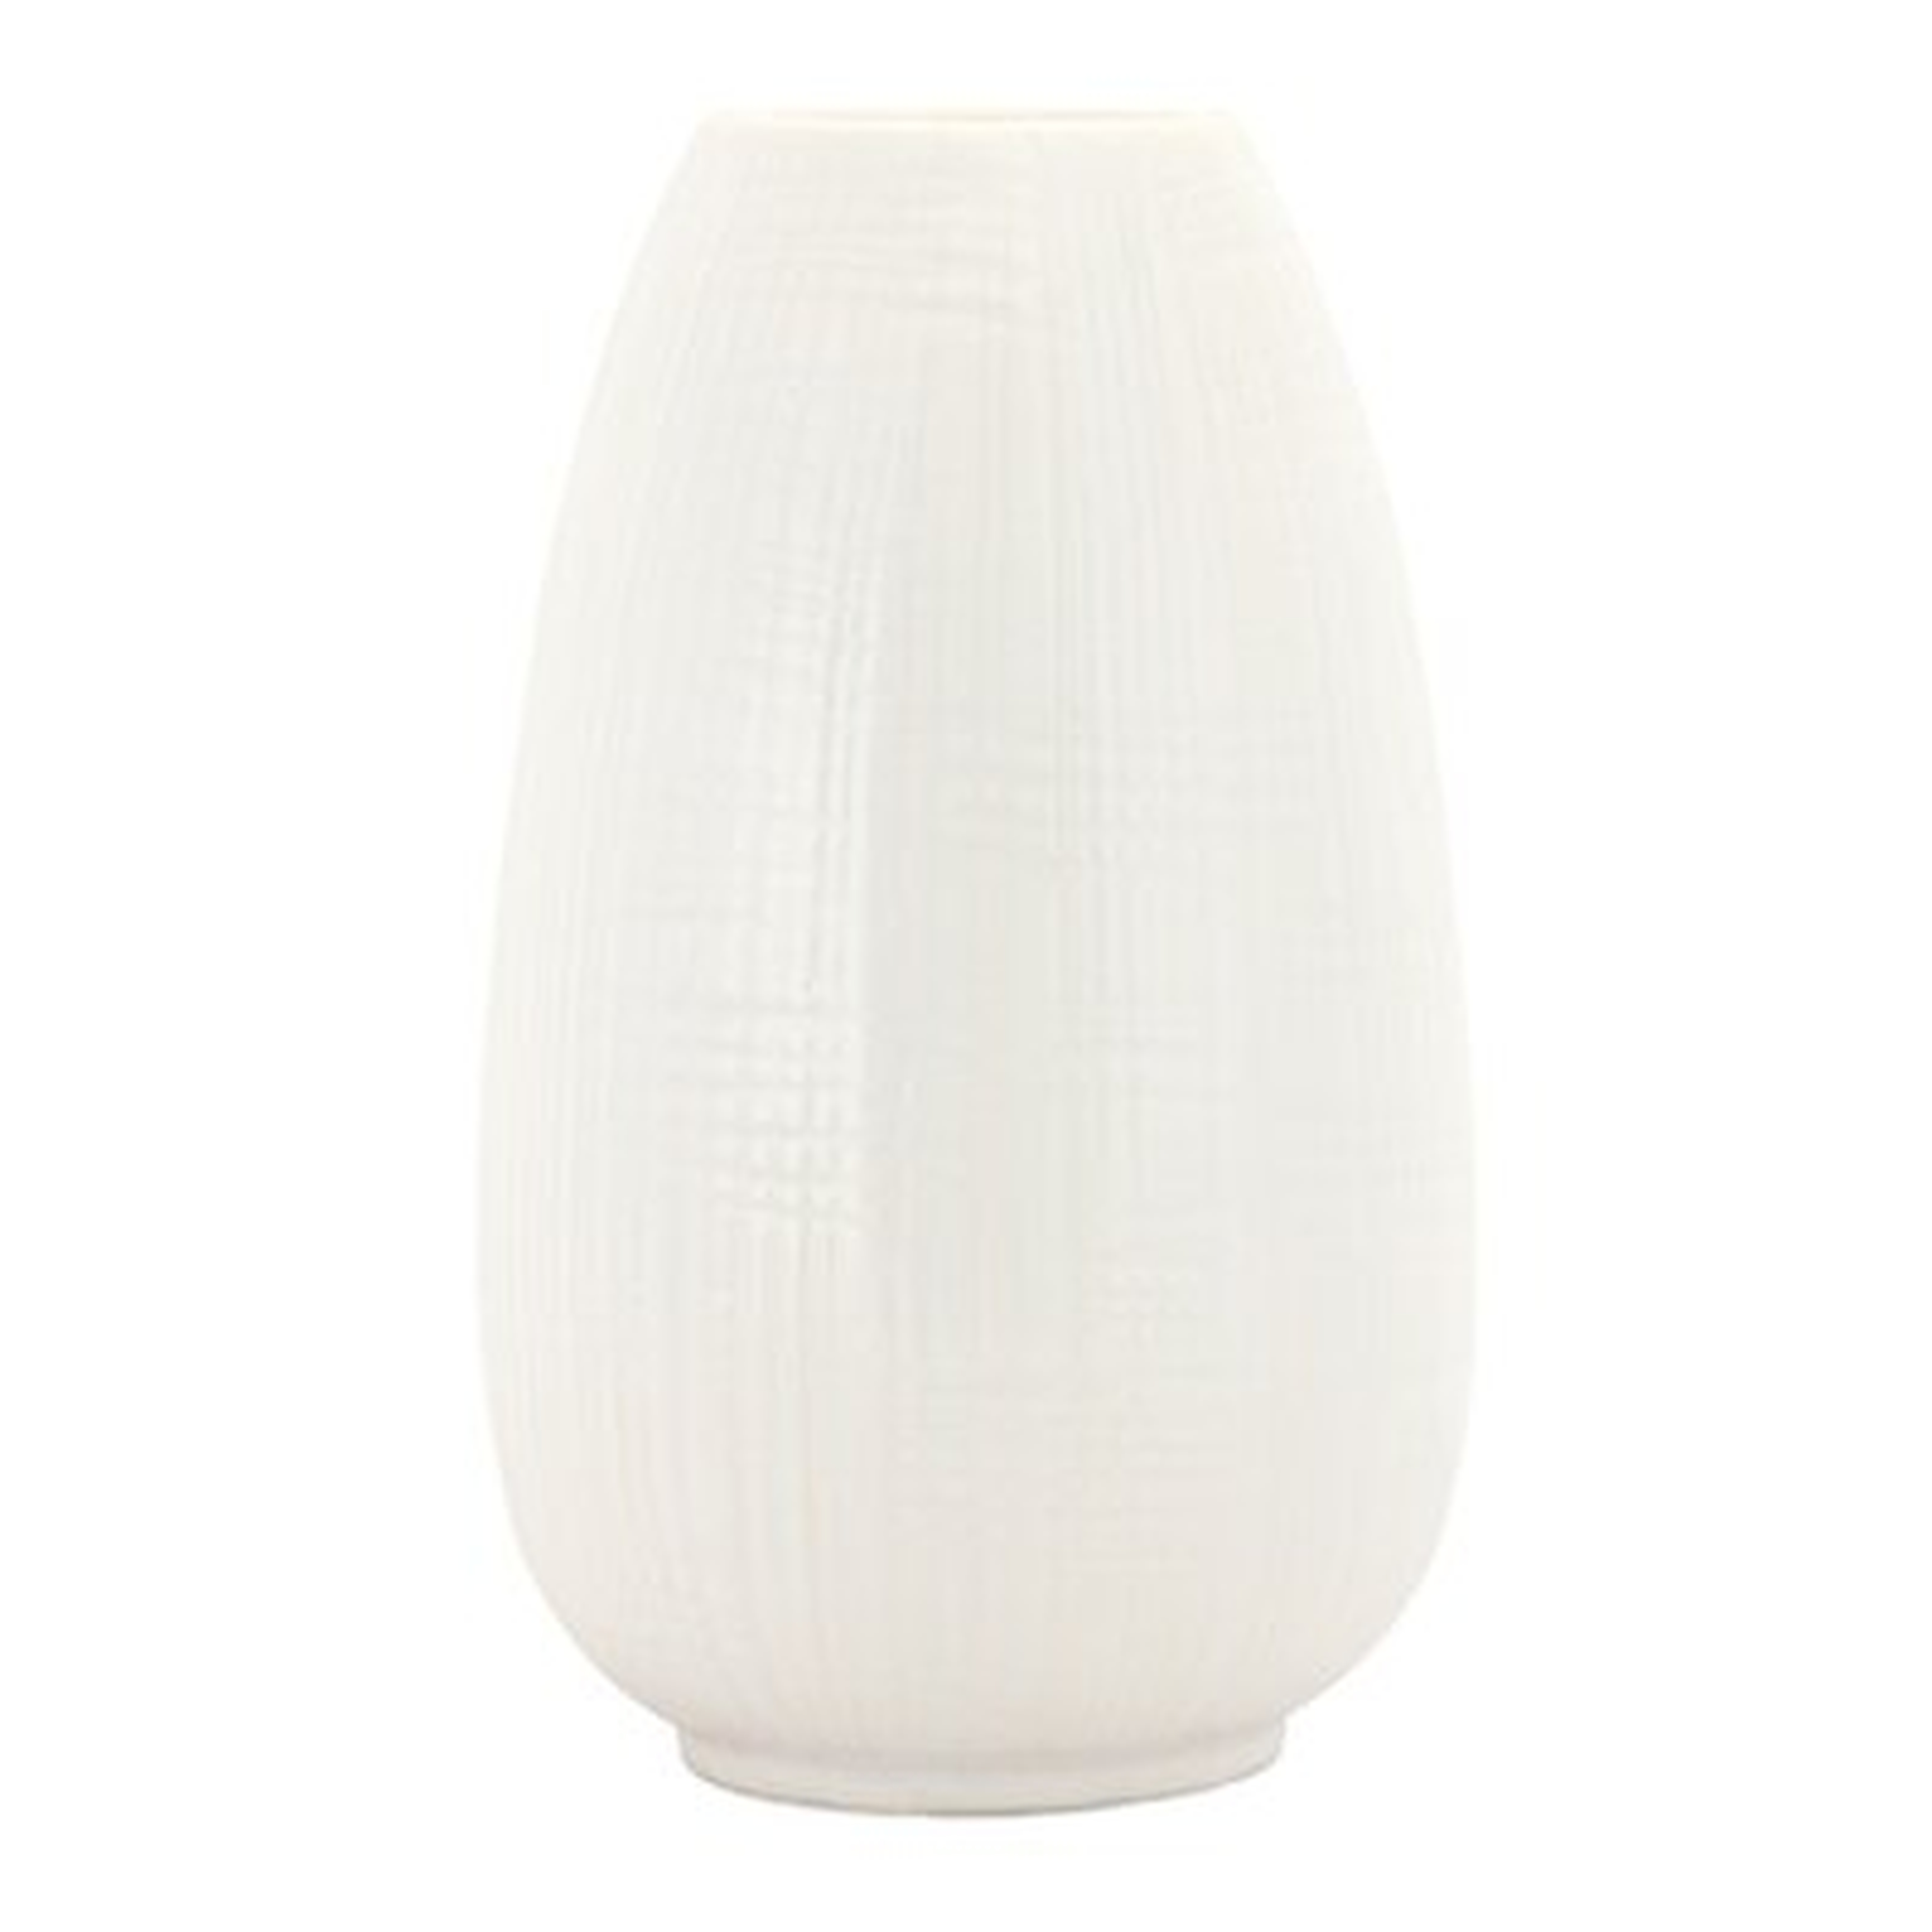 White 12" Terracotta Table Vase - Wayfair